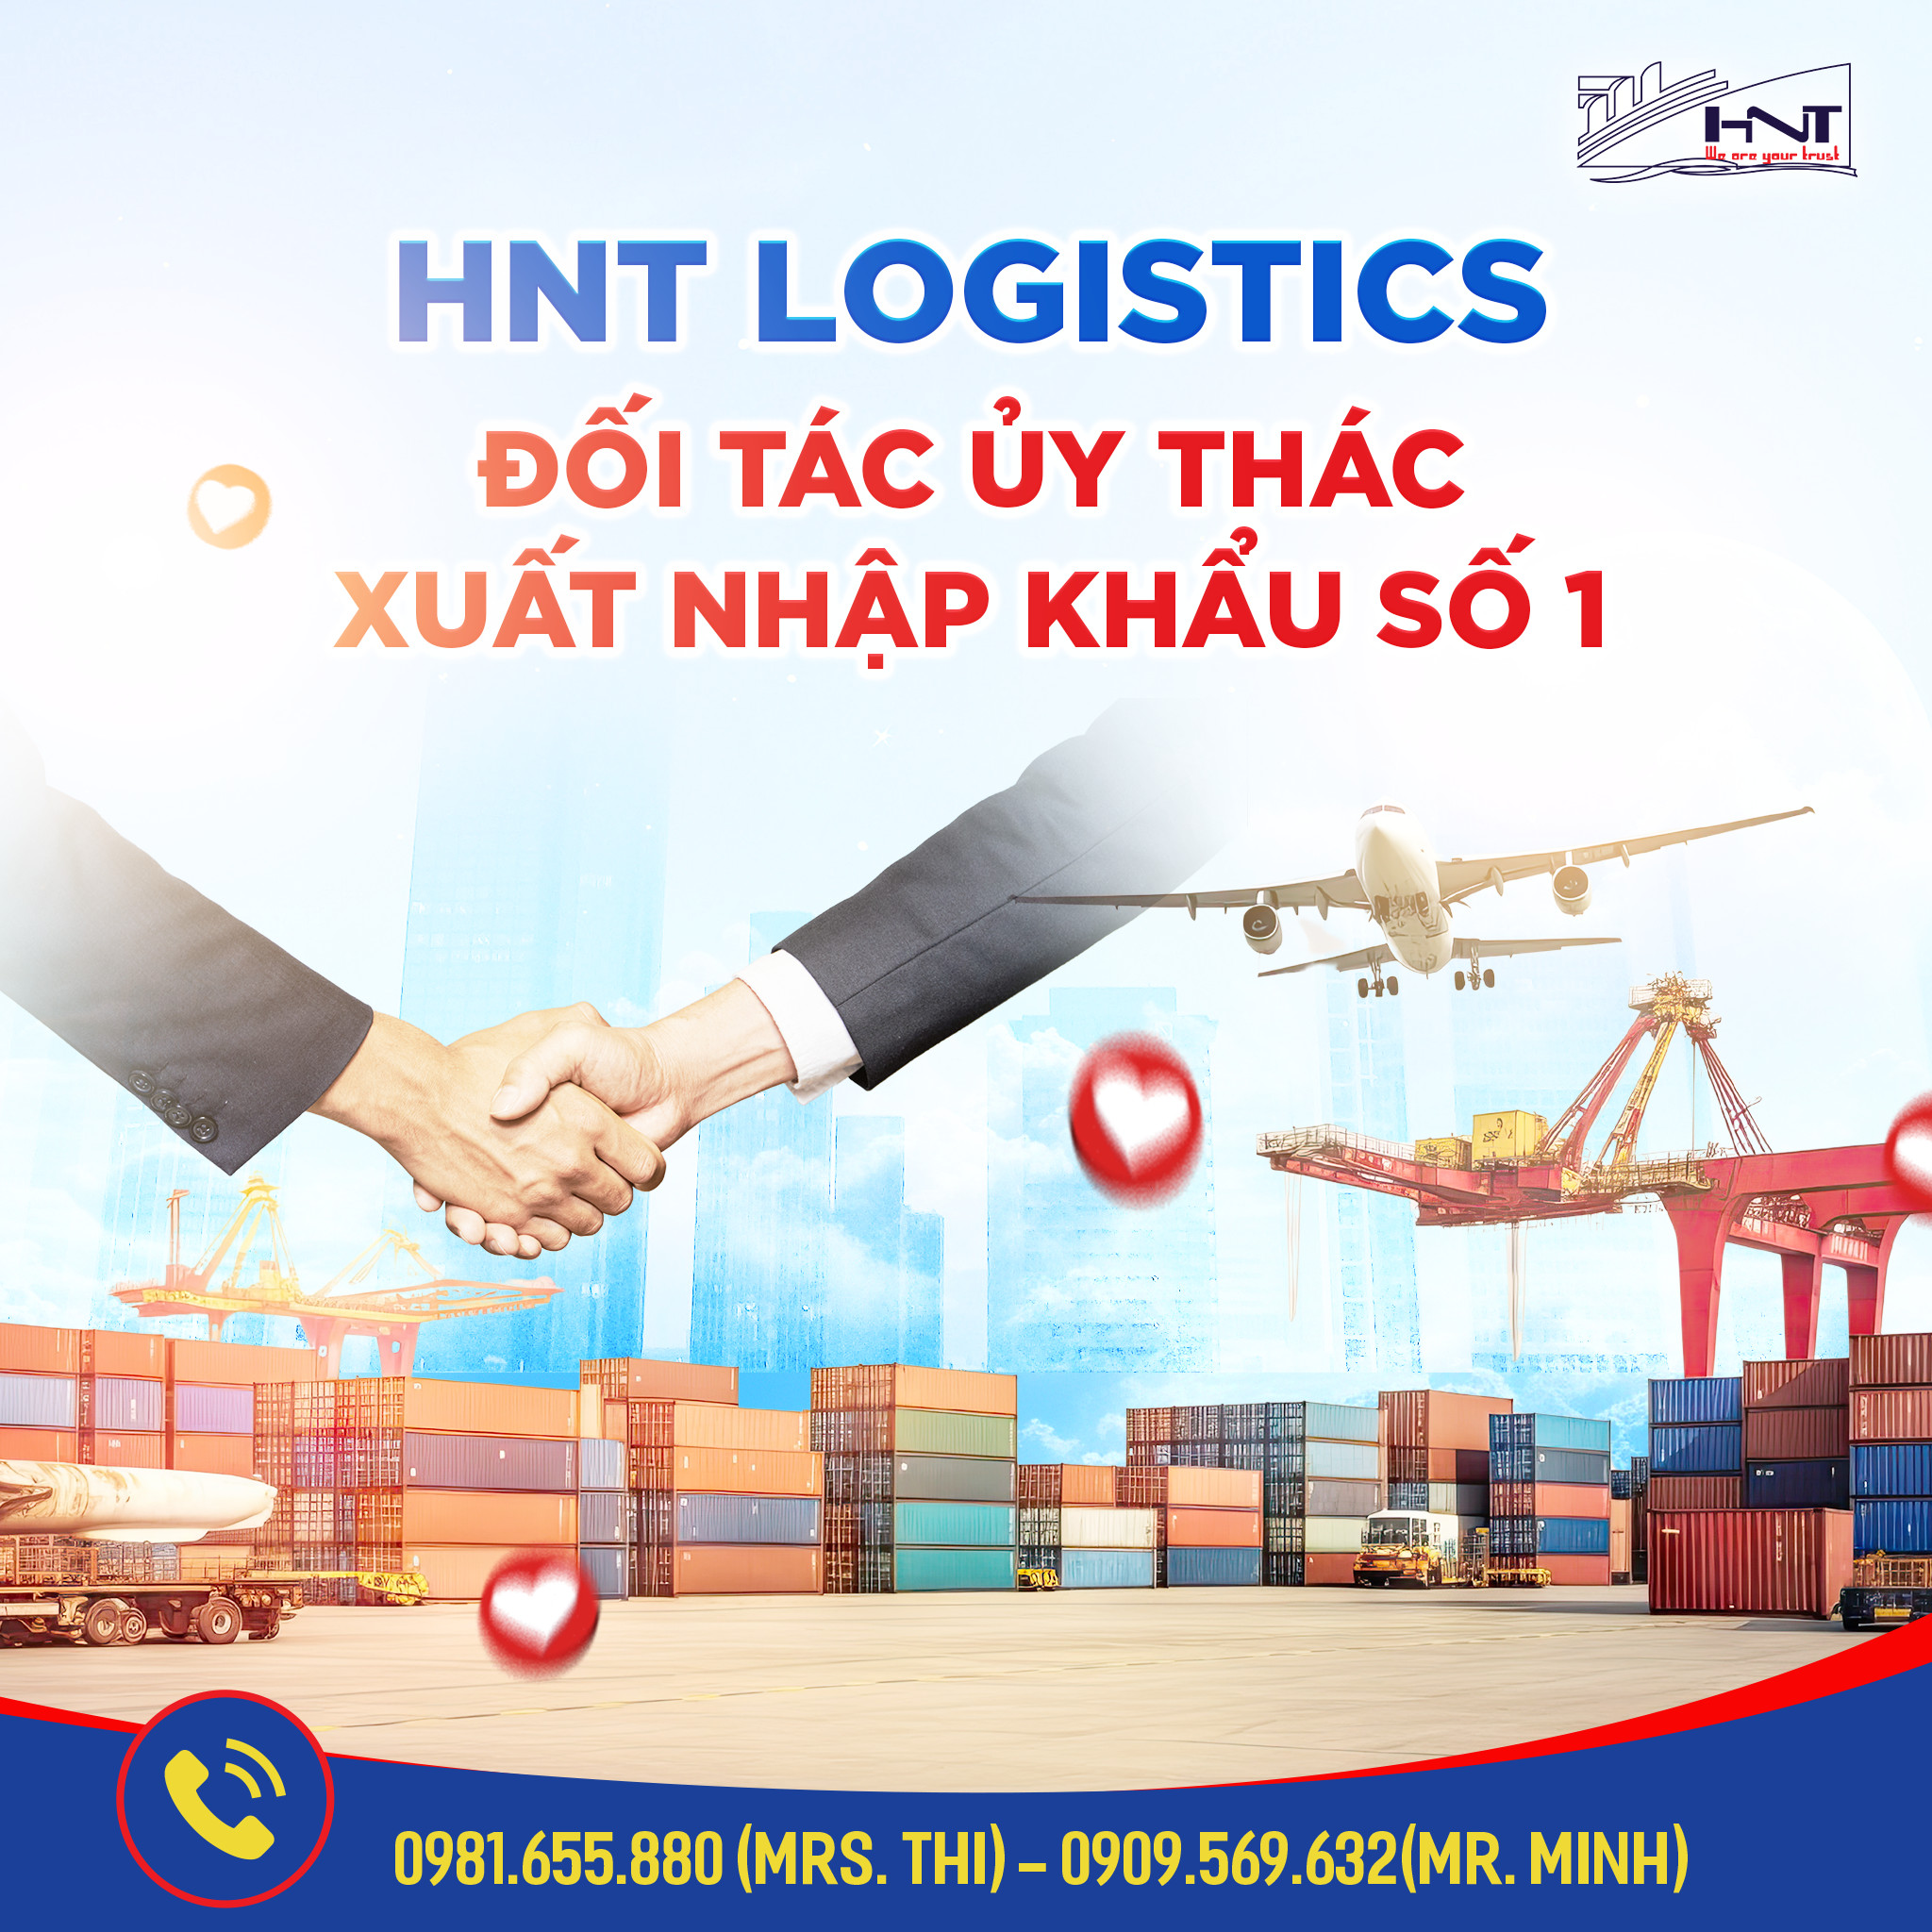 HNT Logistics cung cấp đầy đủ dịch vụ xuất nhập khẩu tpHCM.